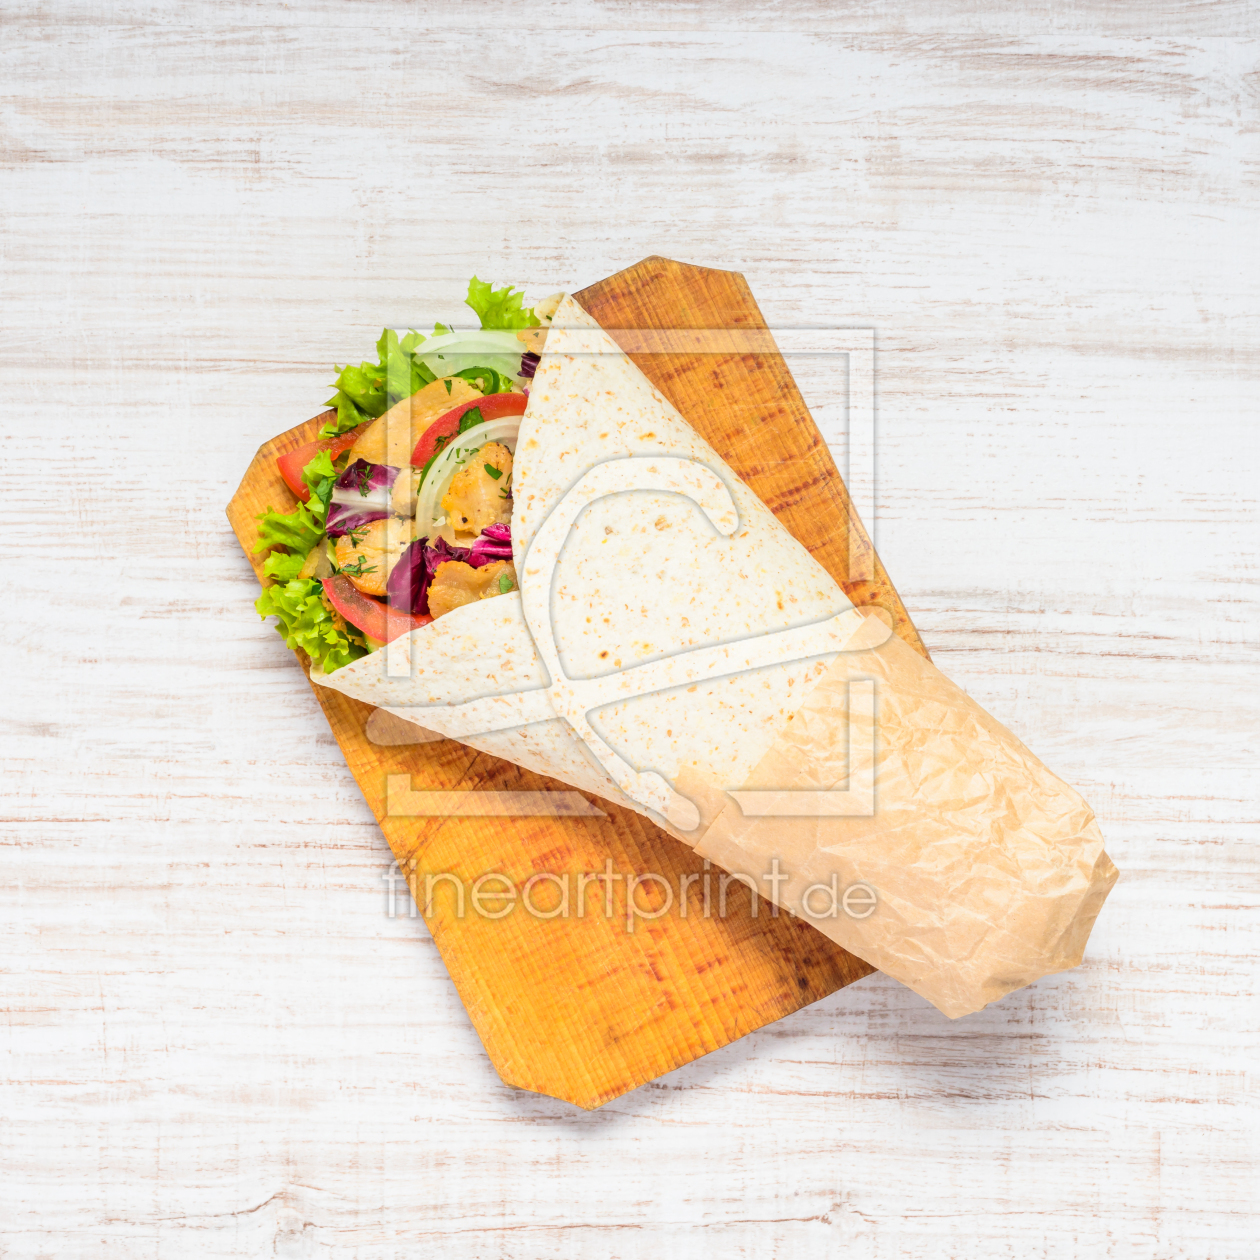 Bild-Nr.: 11857178 Shawarma Brot mit Fleisch und Gemüse erstellt von xfotostudio